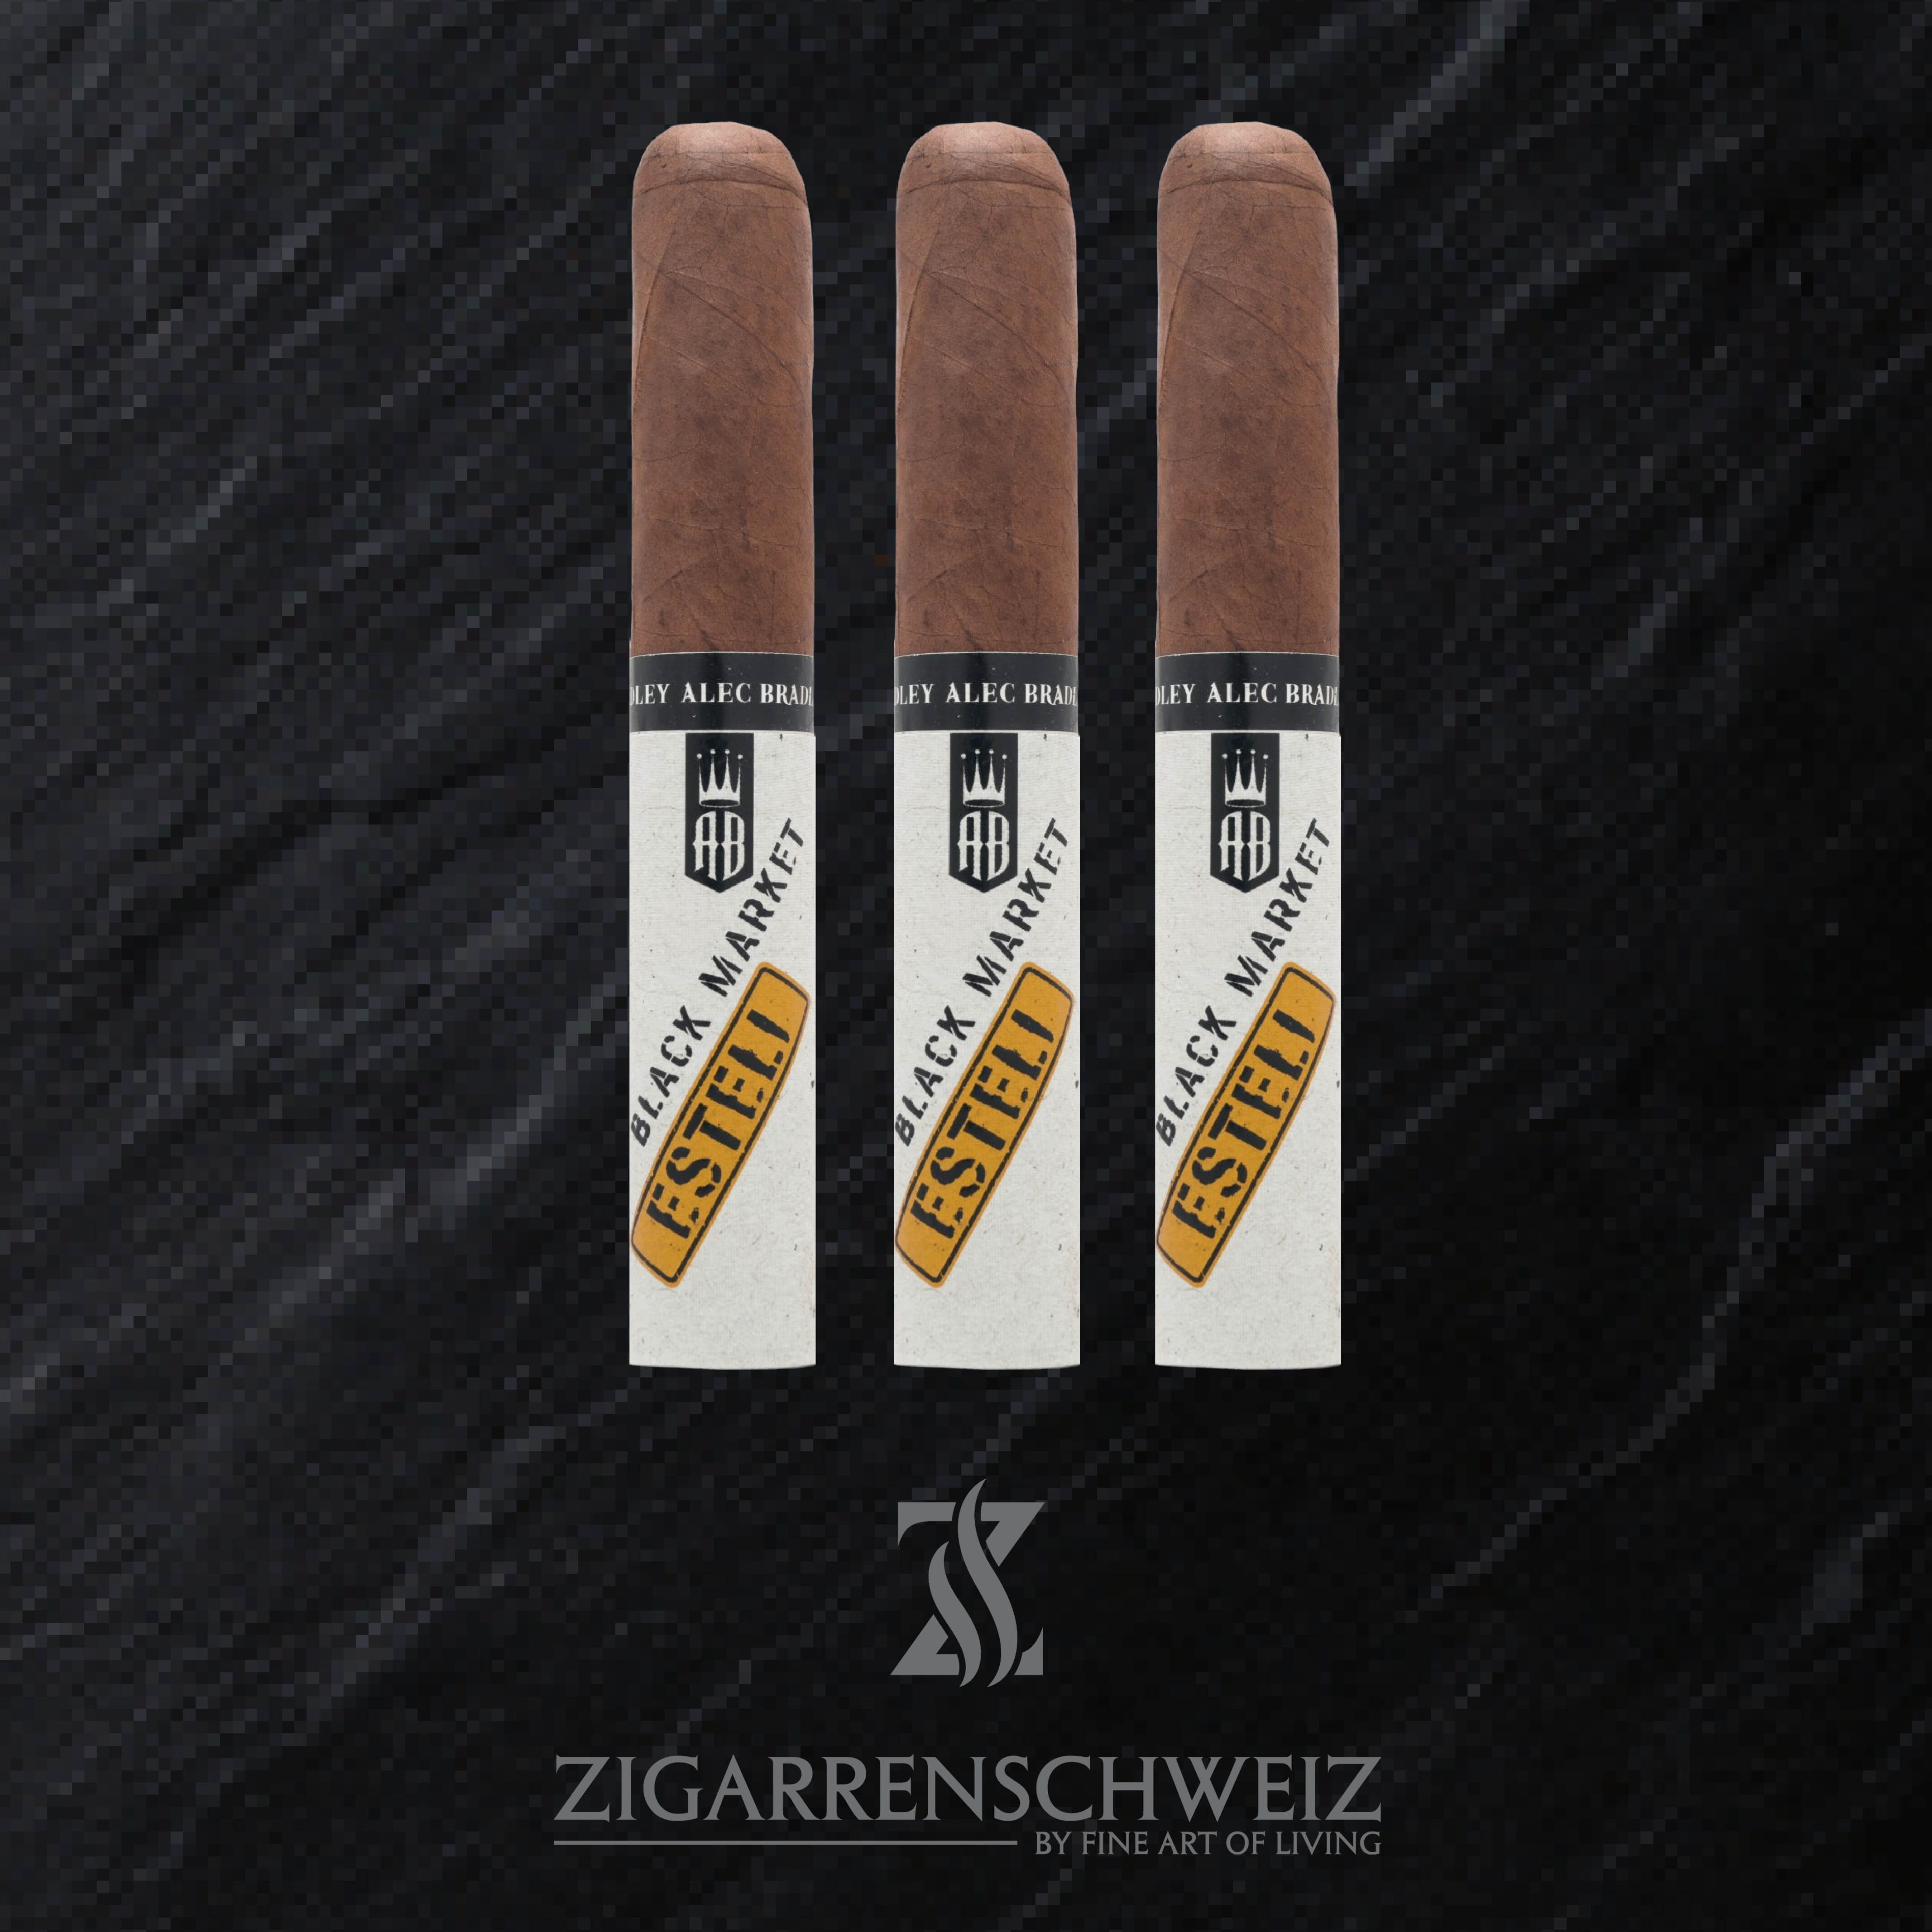 Alec Bradley Black Market Esteli Gordo Zigarren 3er Zigarren Etui von Zigarren Schweiz